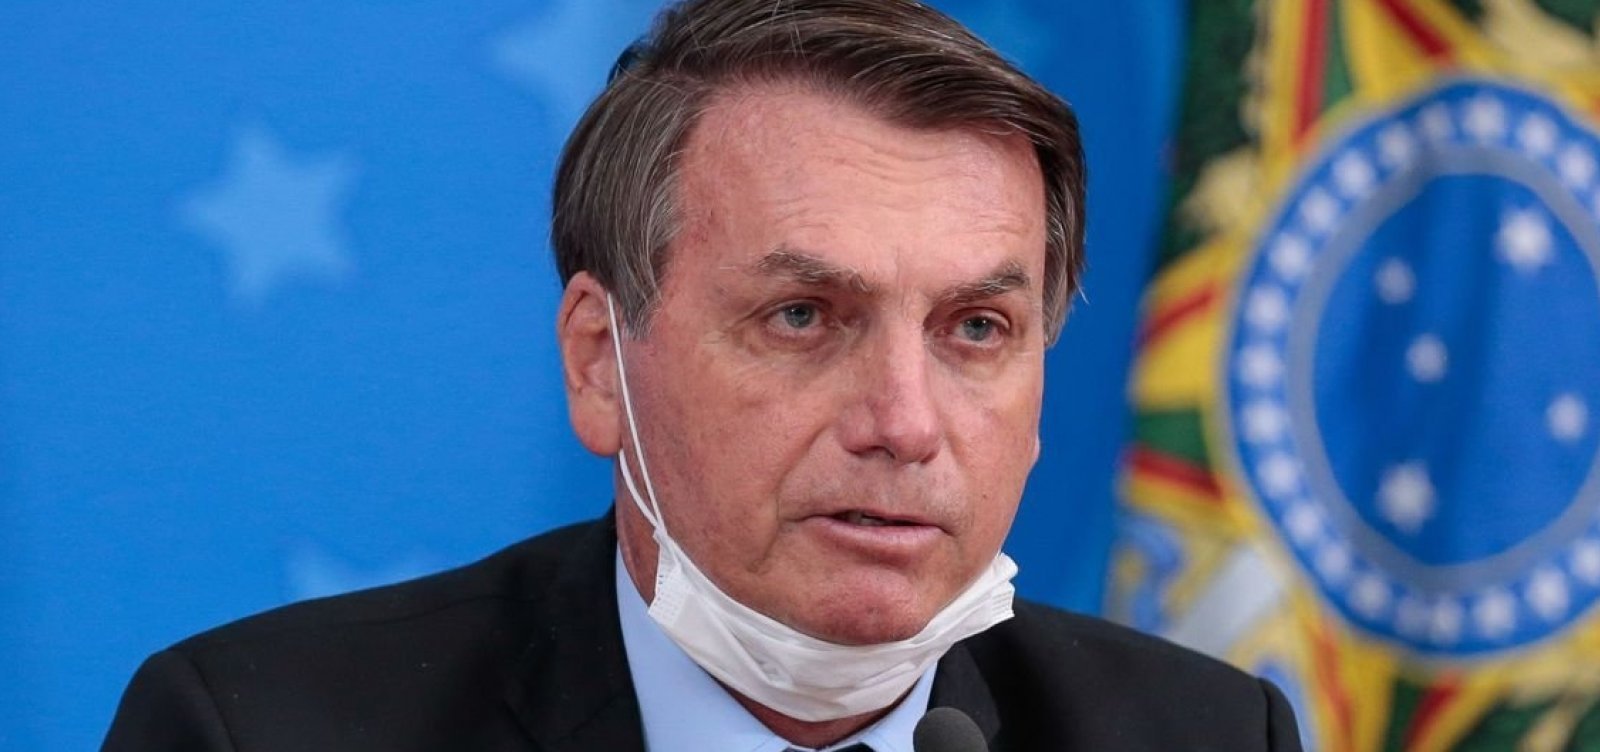 Justiça anula multa de R$ 370 mil a Bolsonaro por não uso de máscara facial 